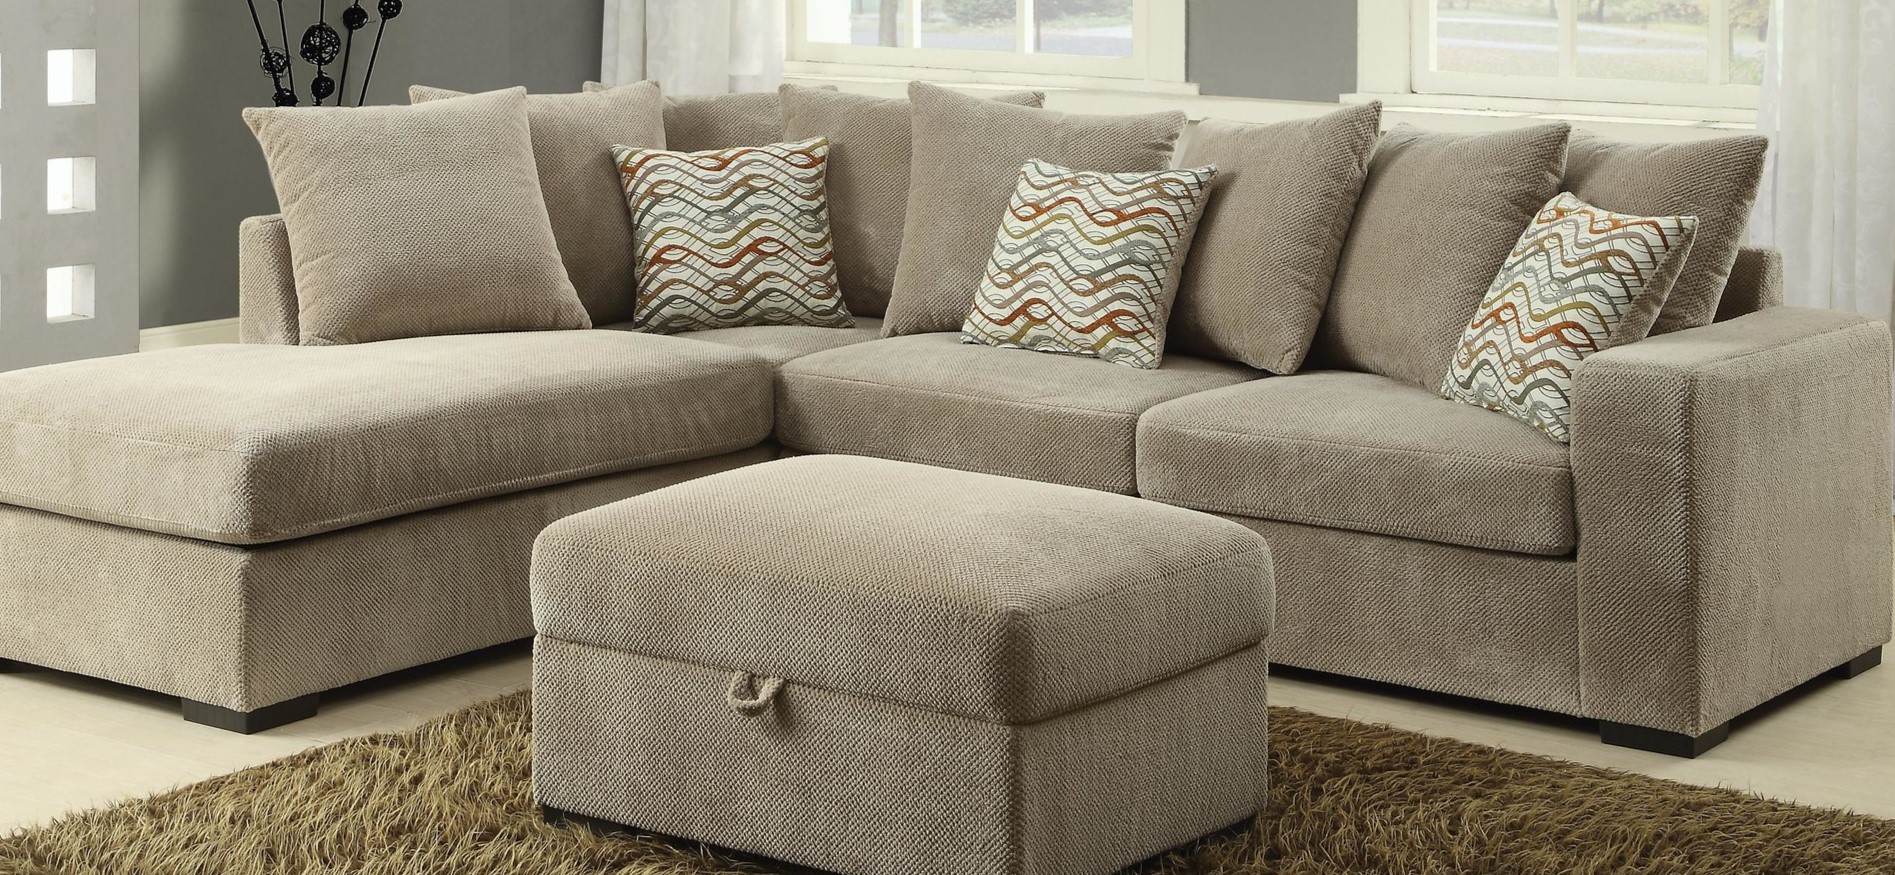 Под цвет обивки дивана можно подобрать стильный пуф